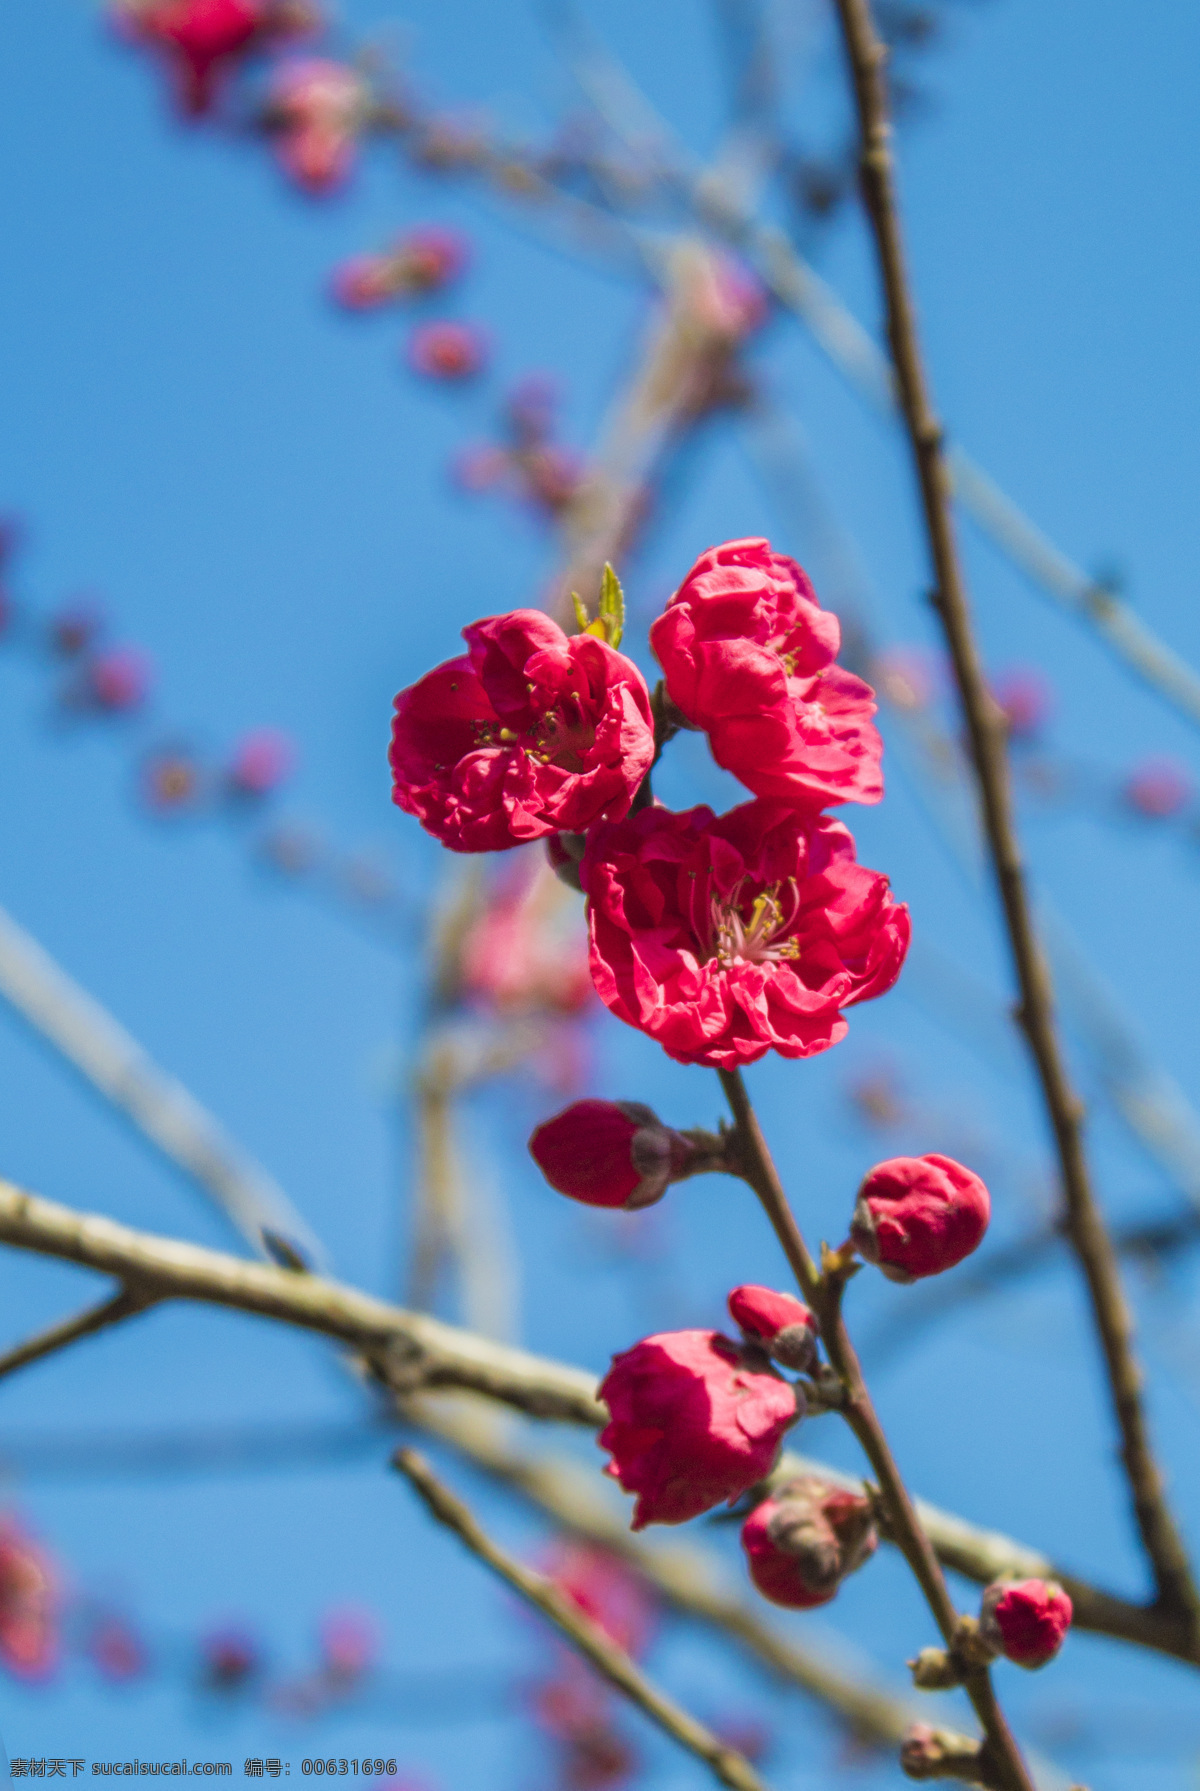 春天 桃花 商用 桃花树 花朵 花儿 春 风景 风光